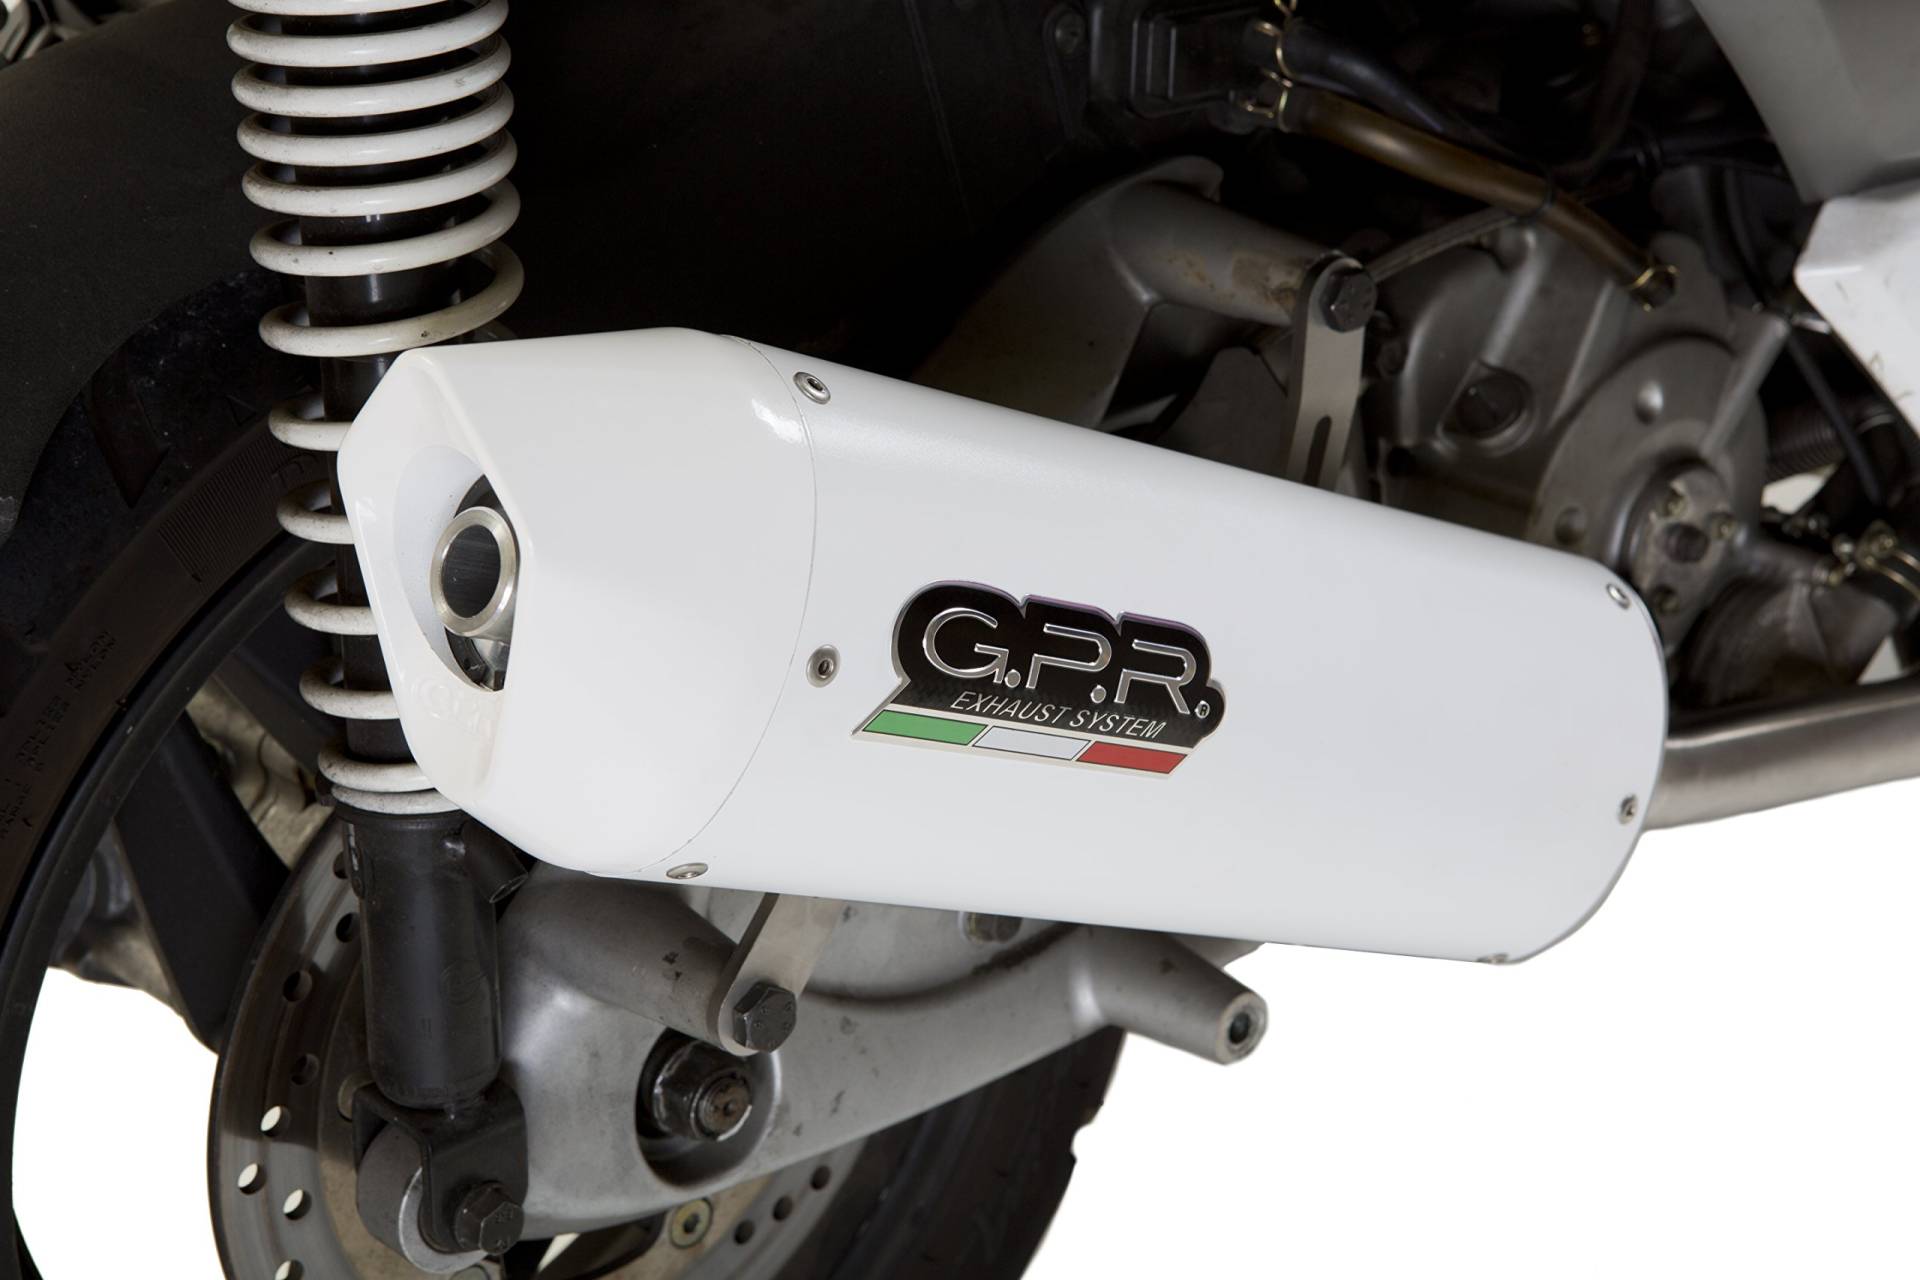 GPR Auspuff Endstück – SYM Joyride 125 Evo 2008/14 HOMOLOGATED Full Exhaust System by GPR Exhaust Systems Albus Ceramic Line von GPR Italia